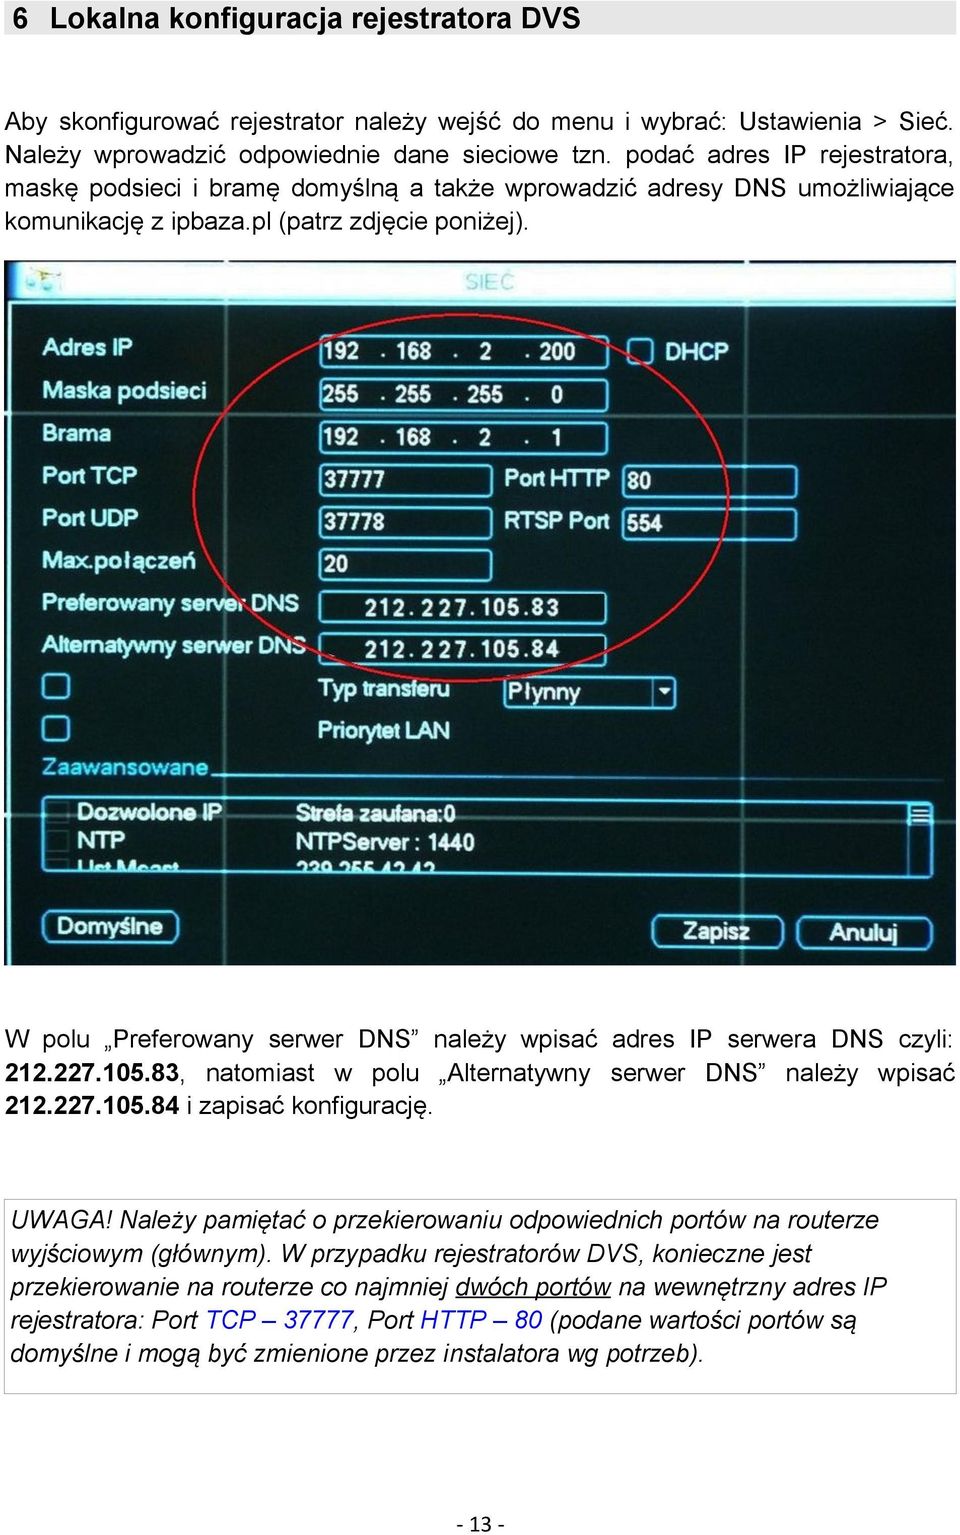 W polu Preferowany serwer DNS należy wpisać adres IP serwera DNS czyli: 212.227.105.83, natomiast w polu Alternatywny serwer DNS należy wpisać 212.227.105.84 i zapisać konfigurację. UWAGA!